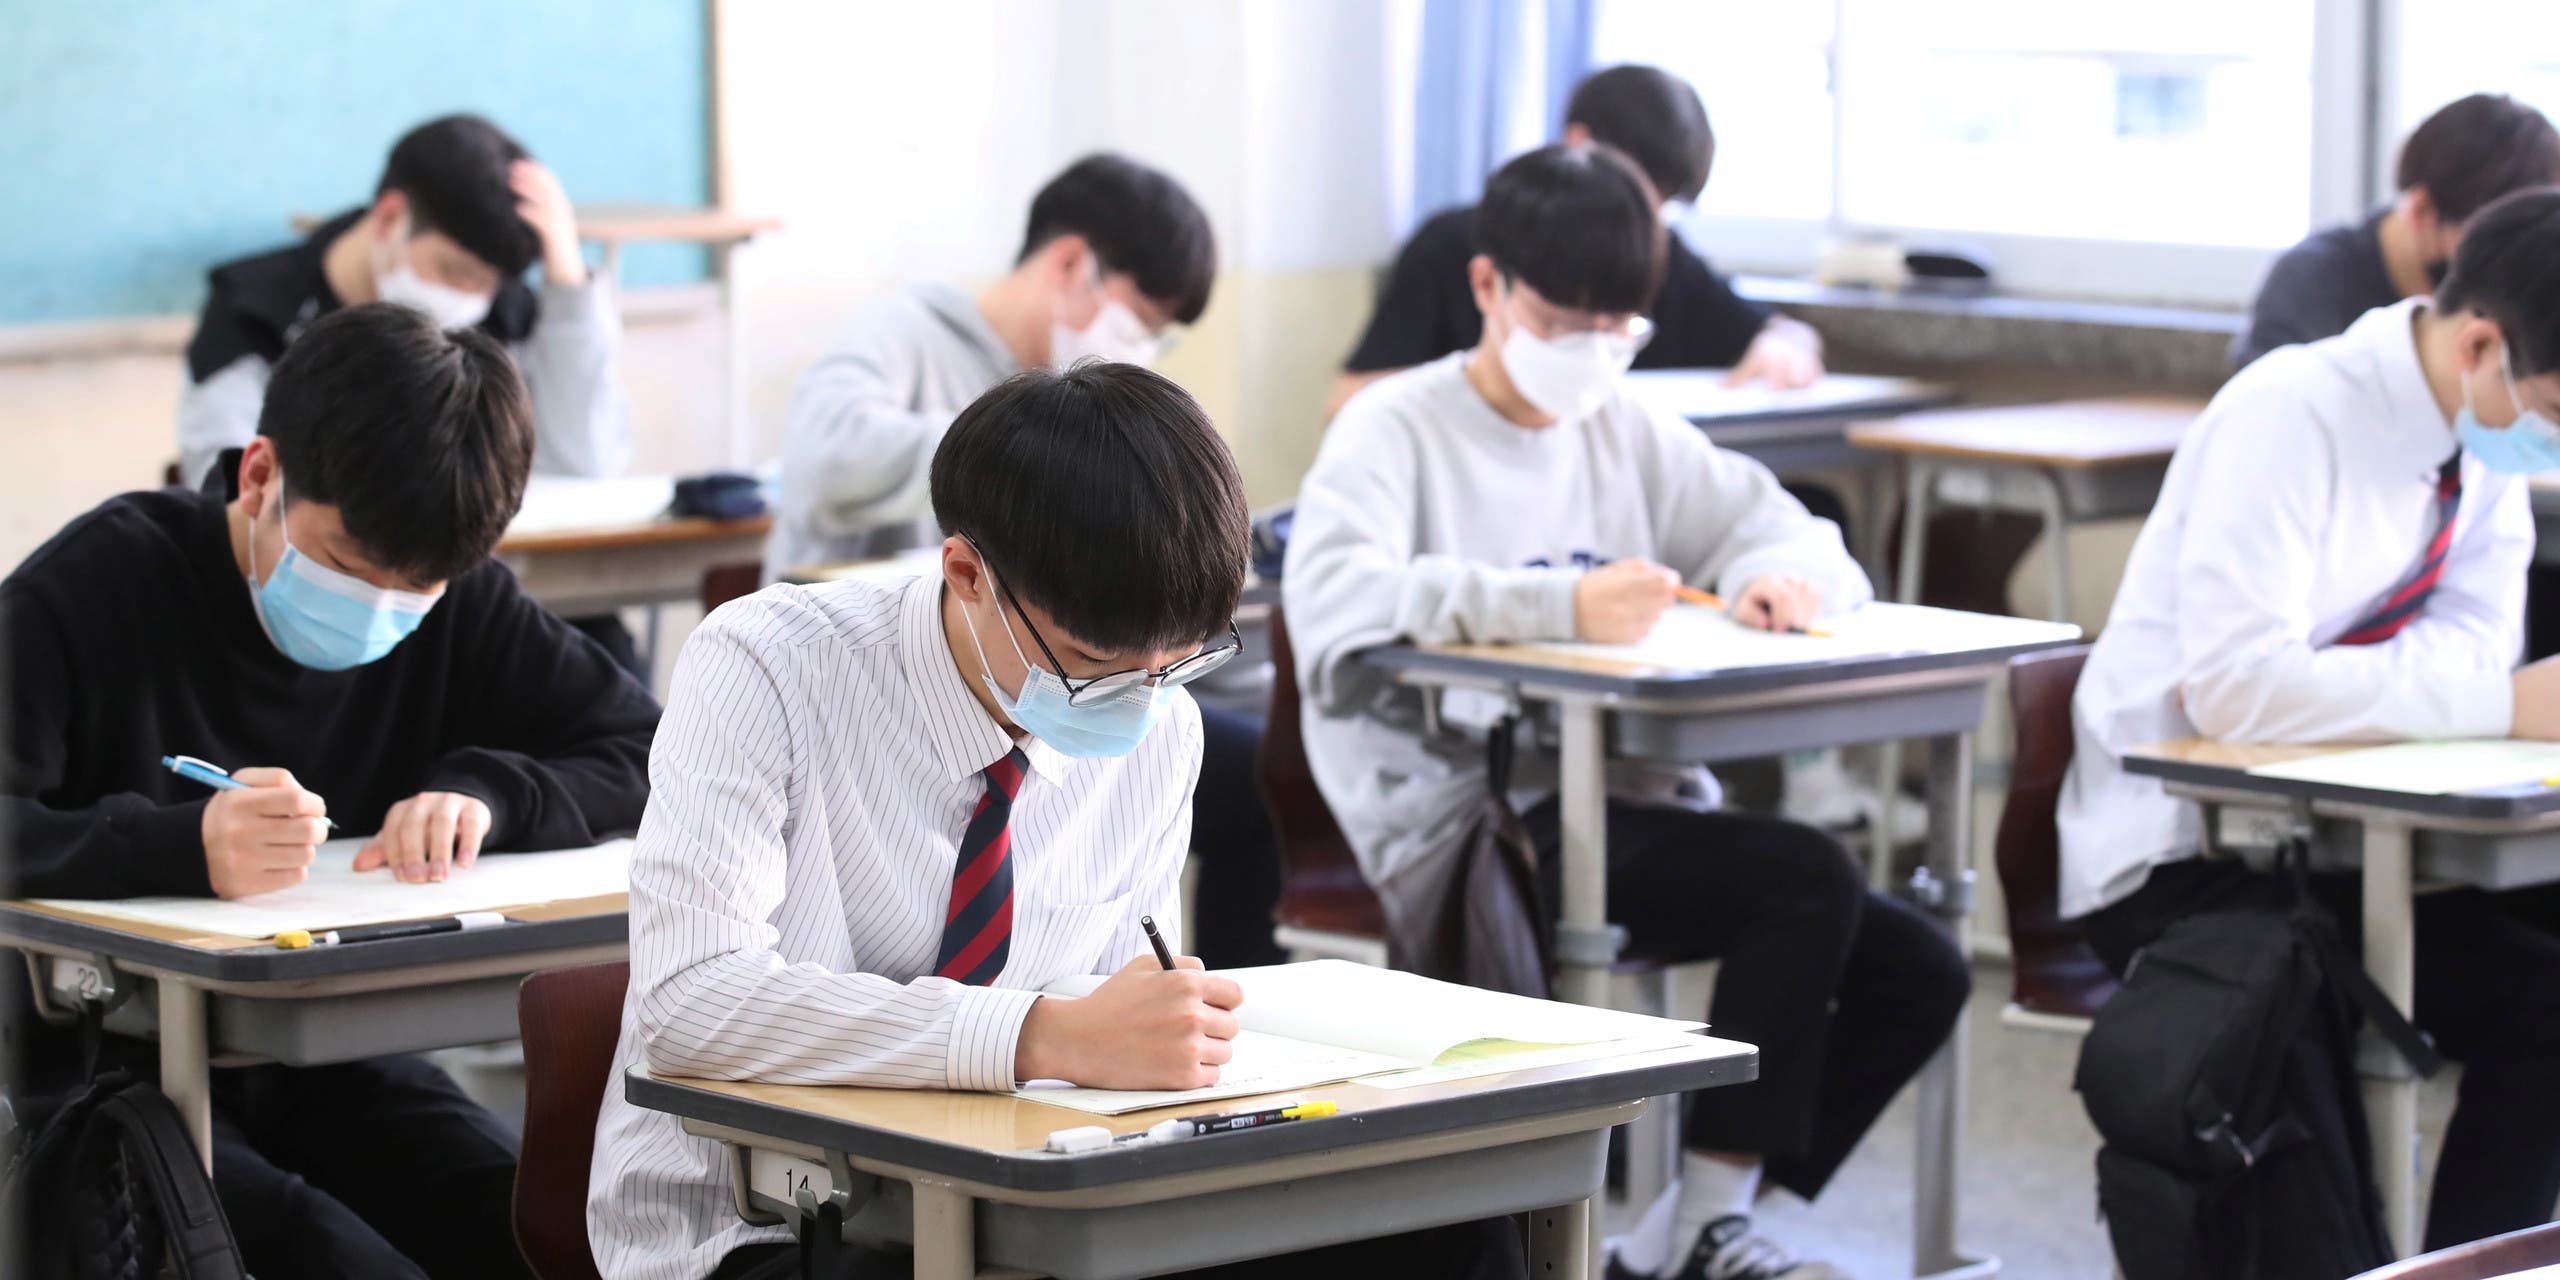 مدارس في كوريا الجنوبية بزمن كورونا